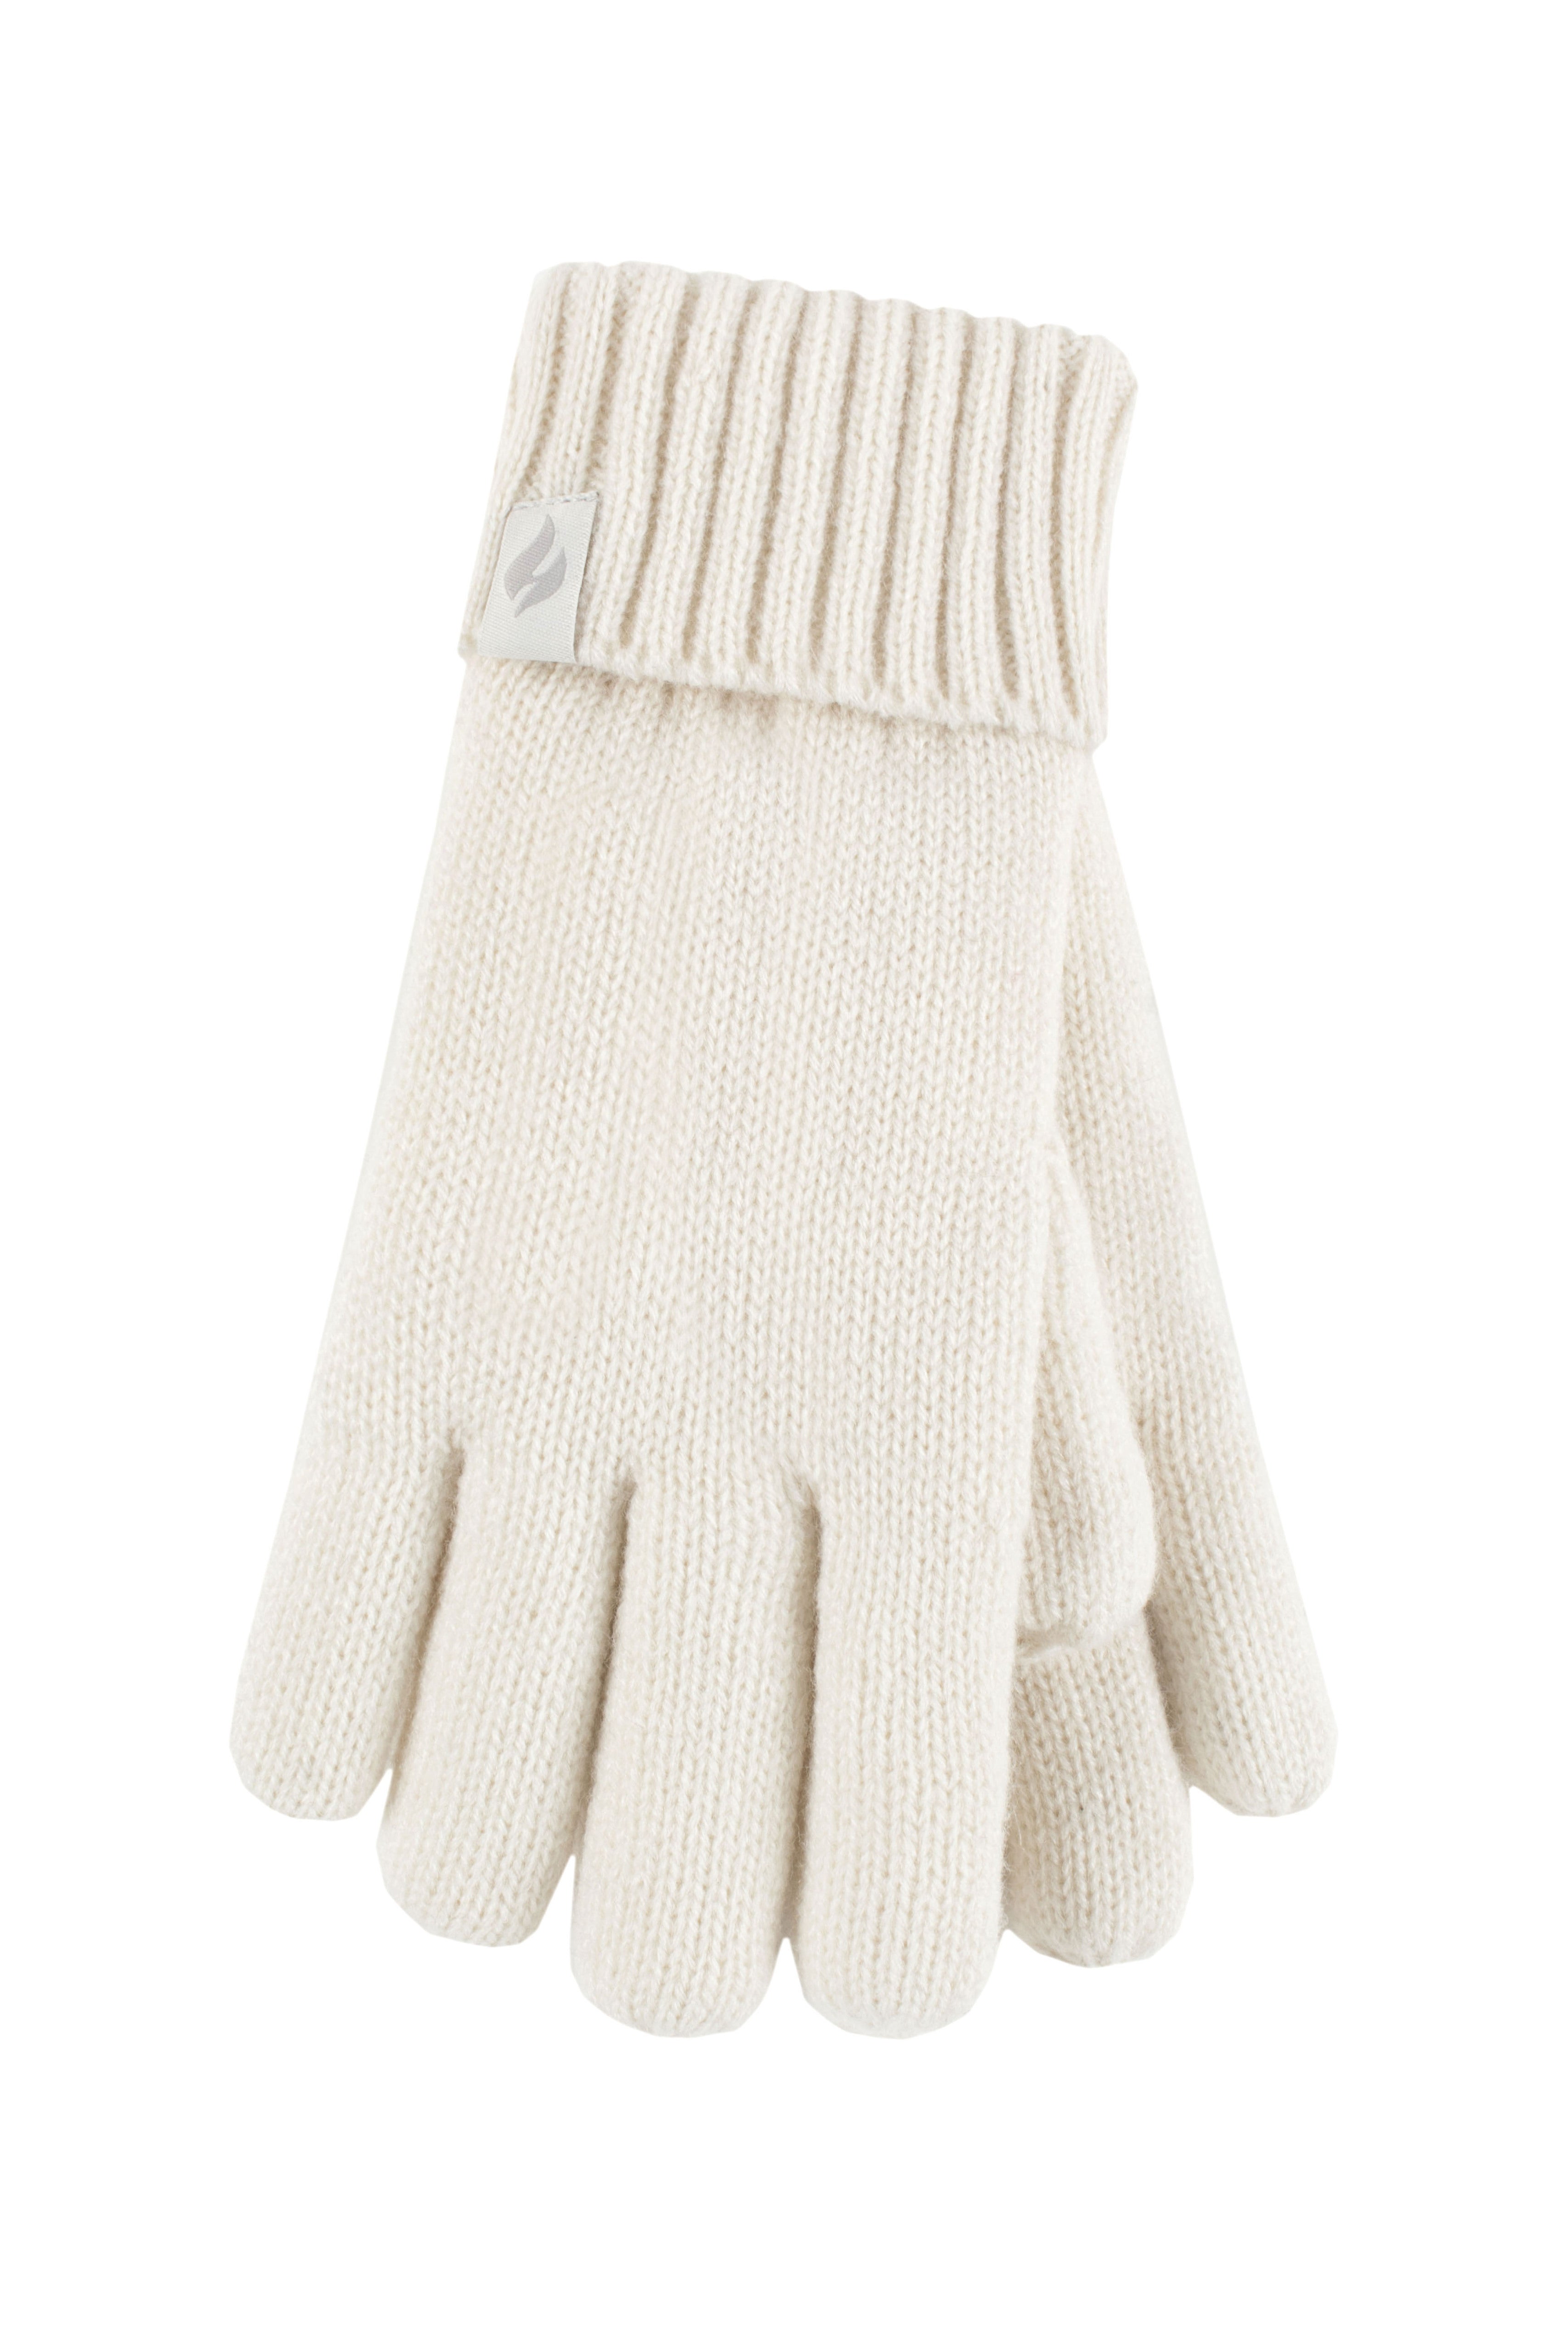 HEAT HOLDERS Thermal Gloves-Kids 7-10 years